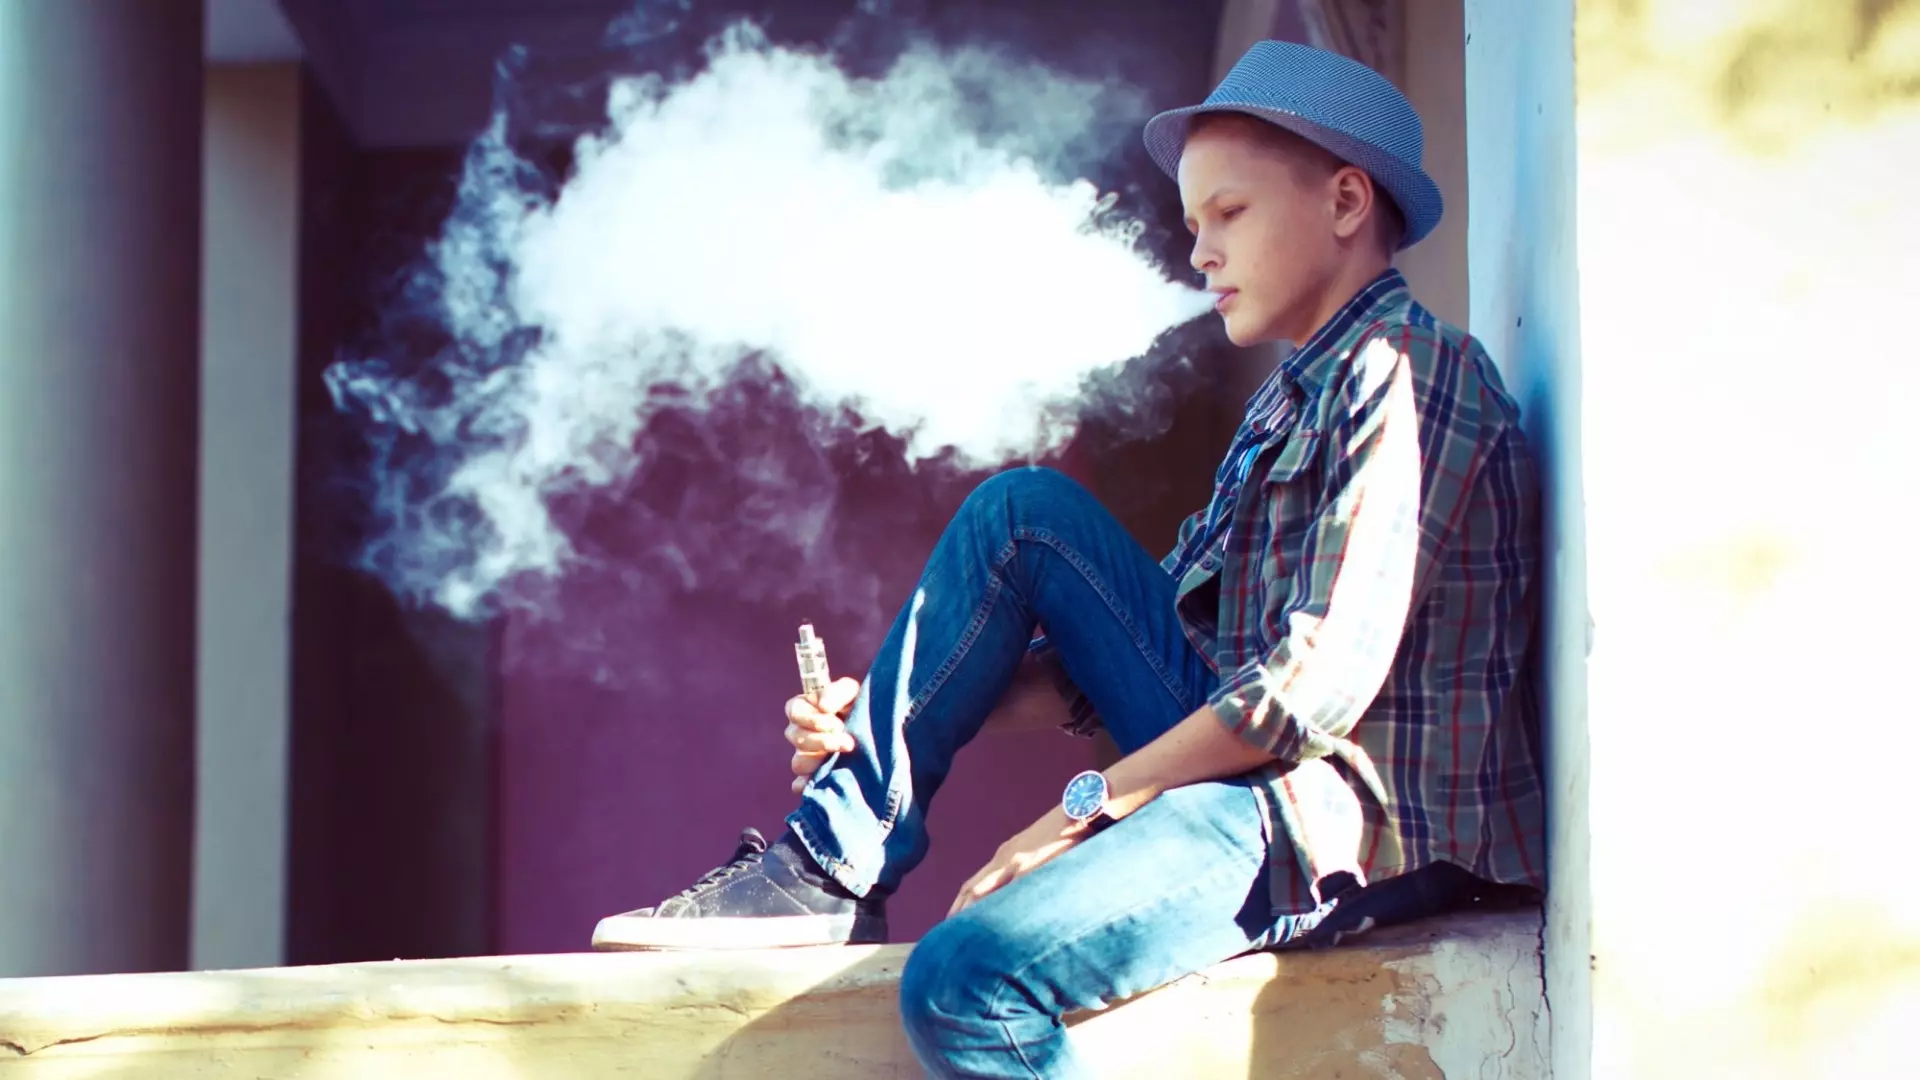 вейпы у подростков намного быстрее формируют никотиновую зависимость, чем любая другая табачная или никотиновая продукция